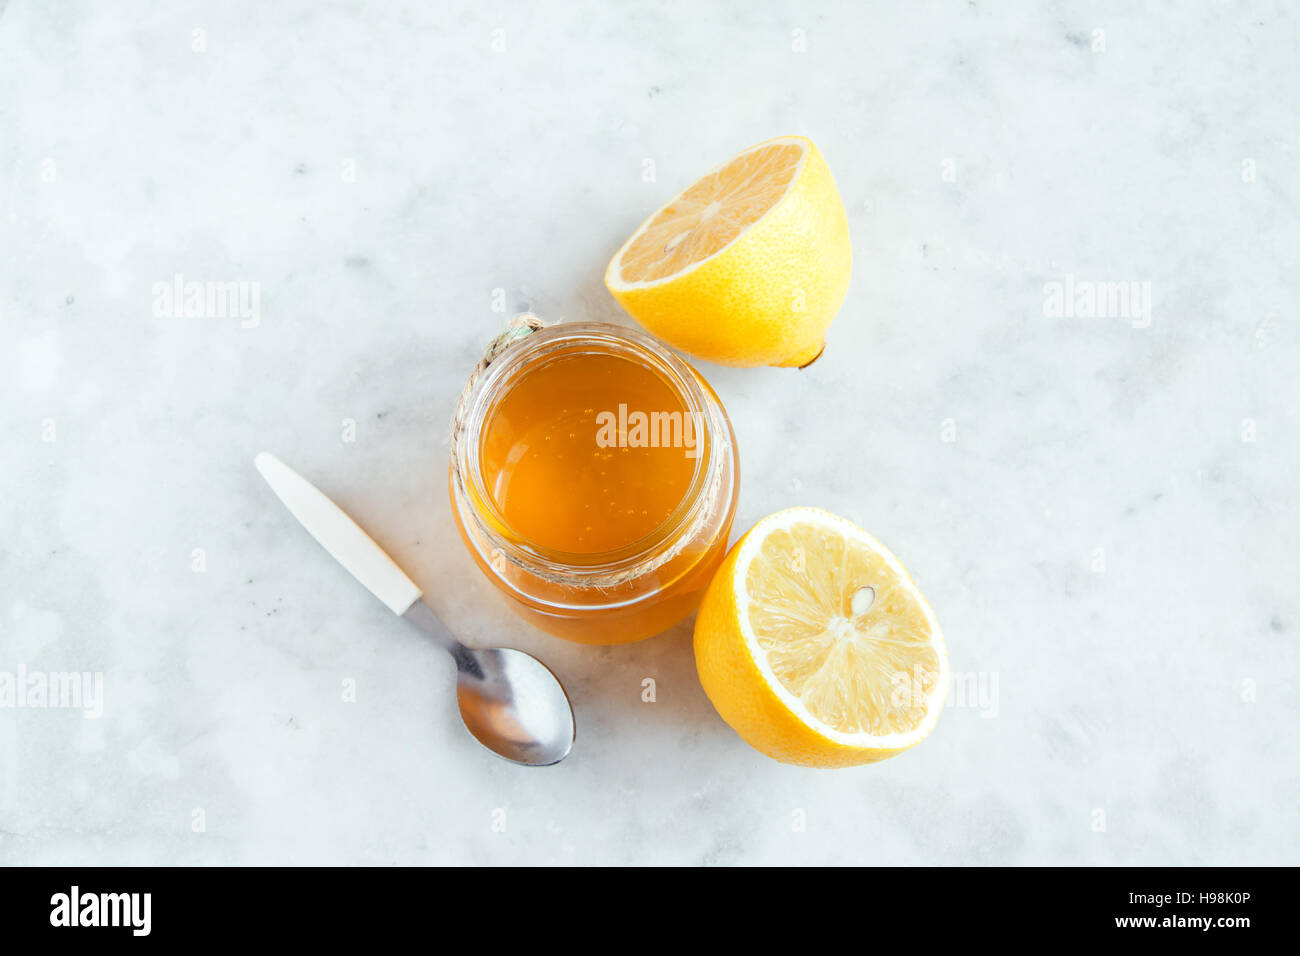 Zitrone und Honig über weißen Stein Hintergrund mit textfreiraum - gesunde Bio-Produkte für alternative Medizin und gesunde Lebensweise Stockfoto